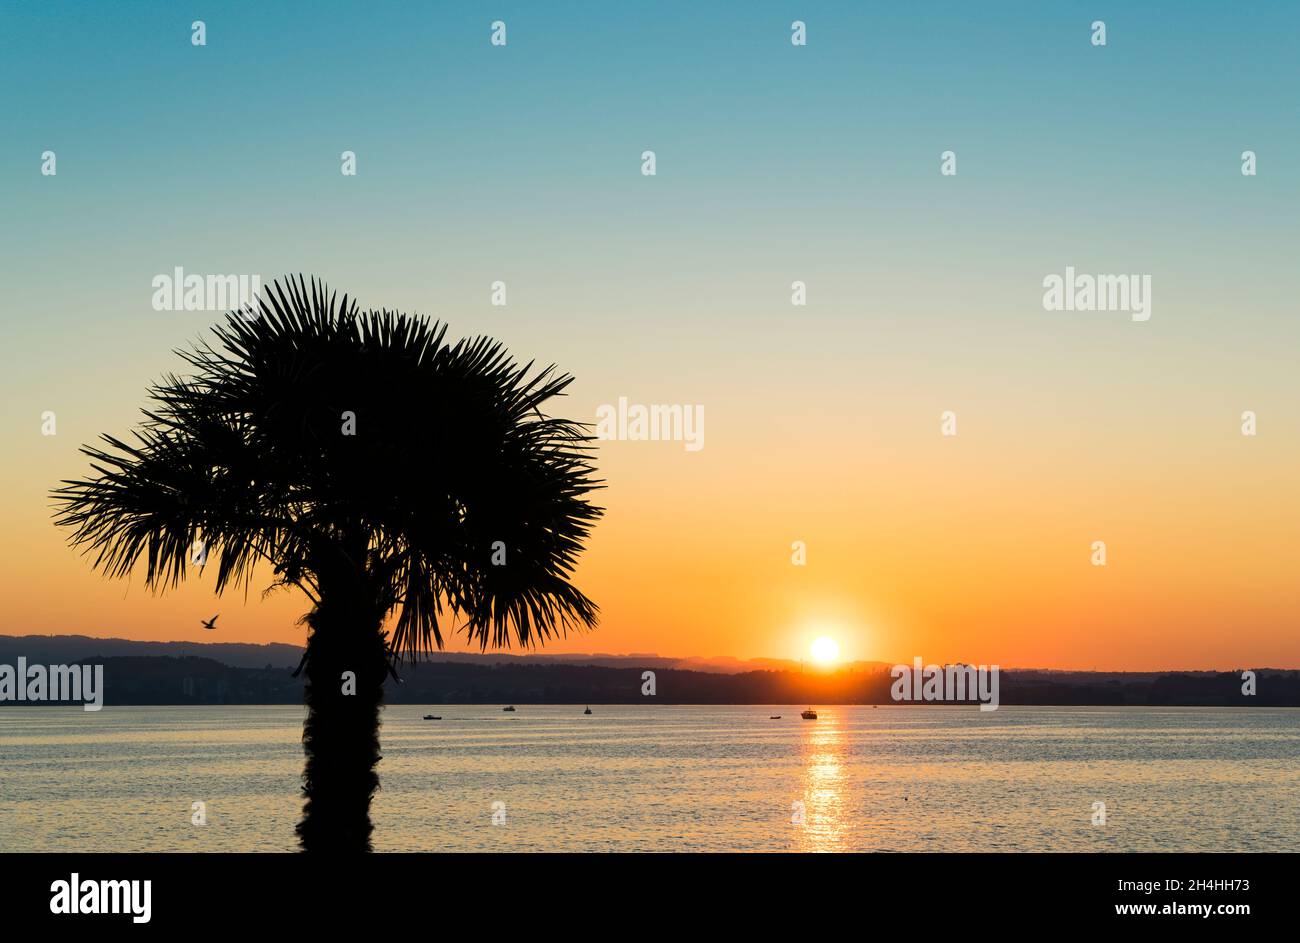 Coucher de soleil paysage se reflétant sur un lac avec la silhouette d'un palmier au premier plan, le ciel clair dans les tons pastel de l'orange et du bleu. Banque D'Images